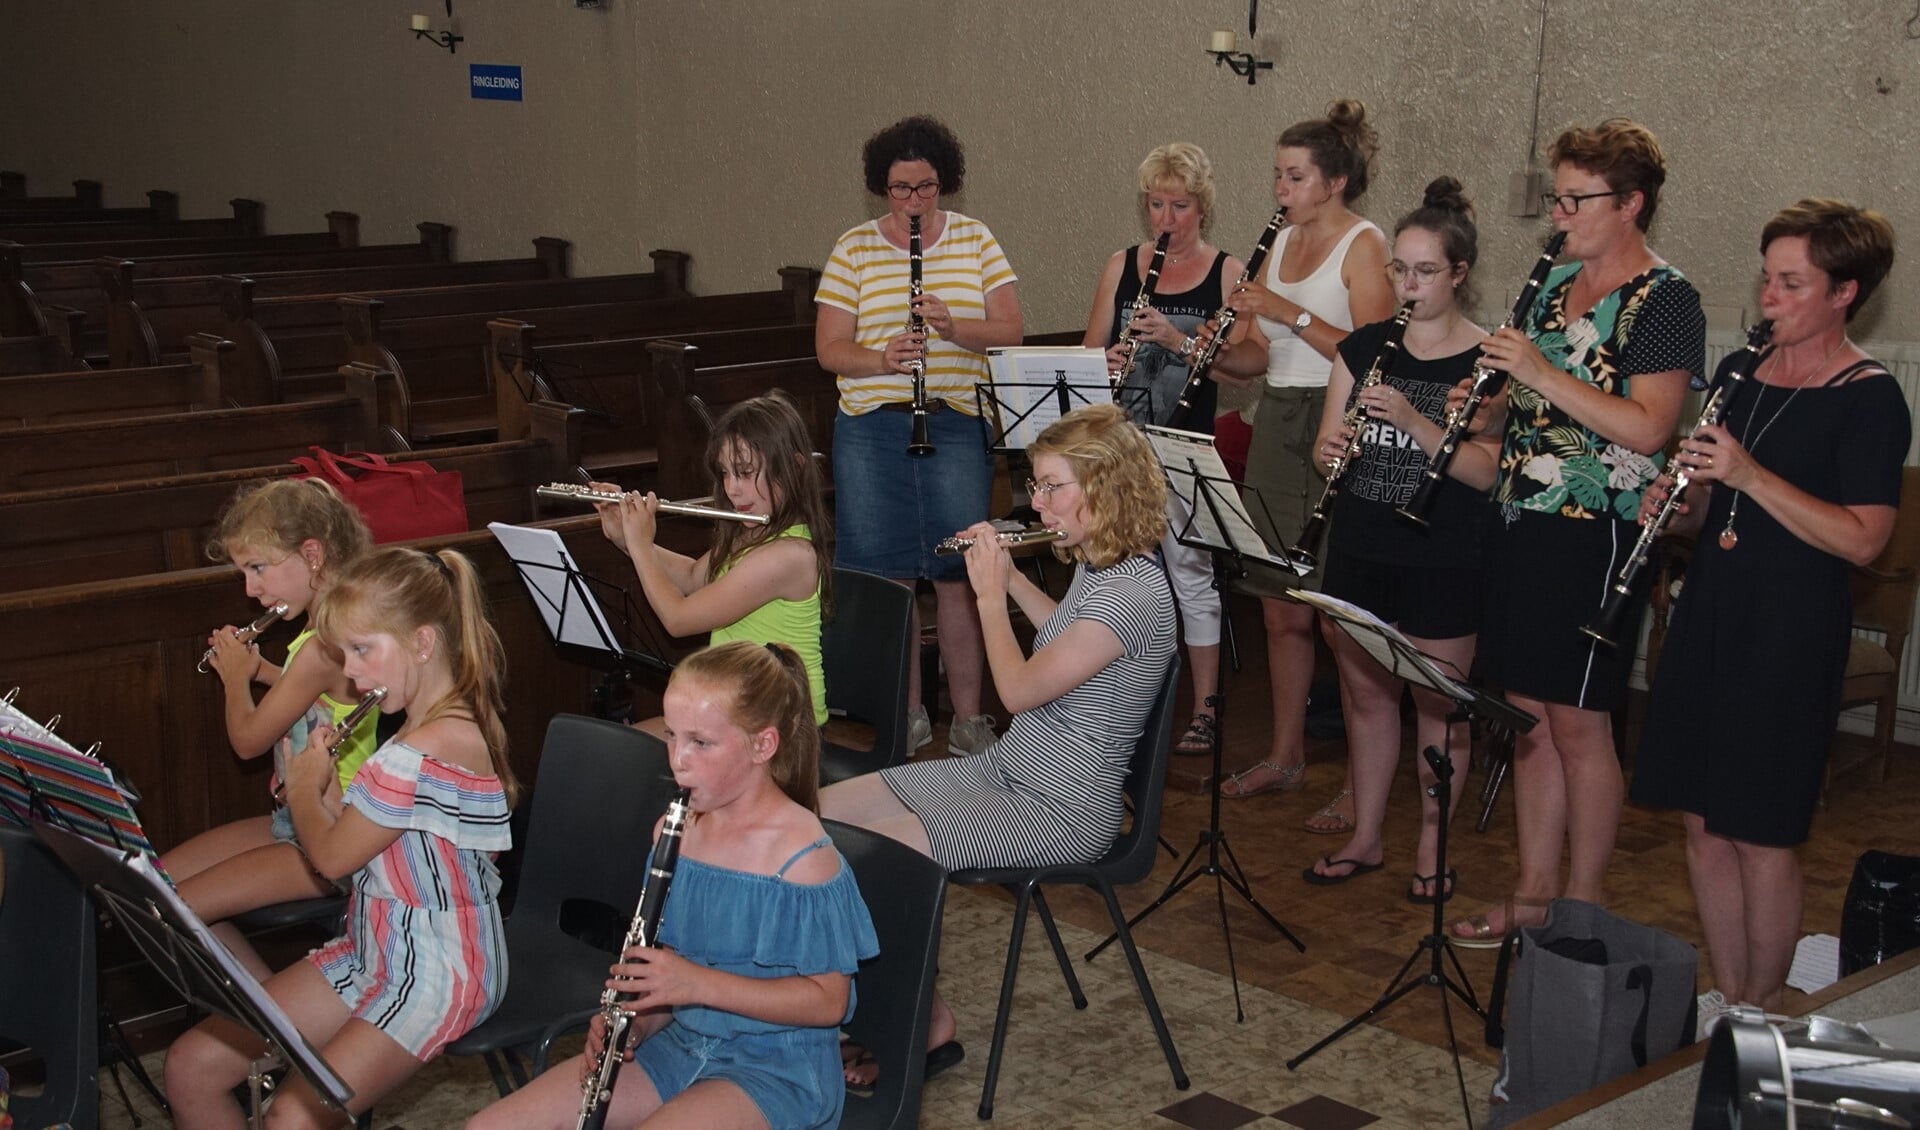 De jongste muzikanten van Sint Antonius pikken volgens de dirigent de ritmes gemakkelijk op. Foto: Frank Vinkenvleugel